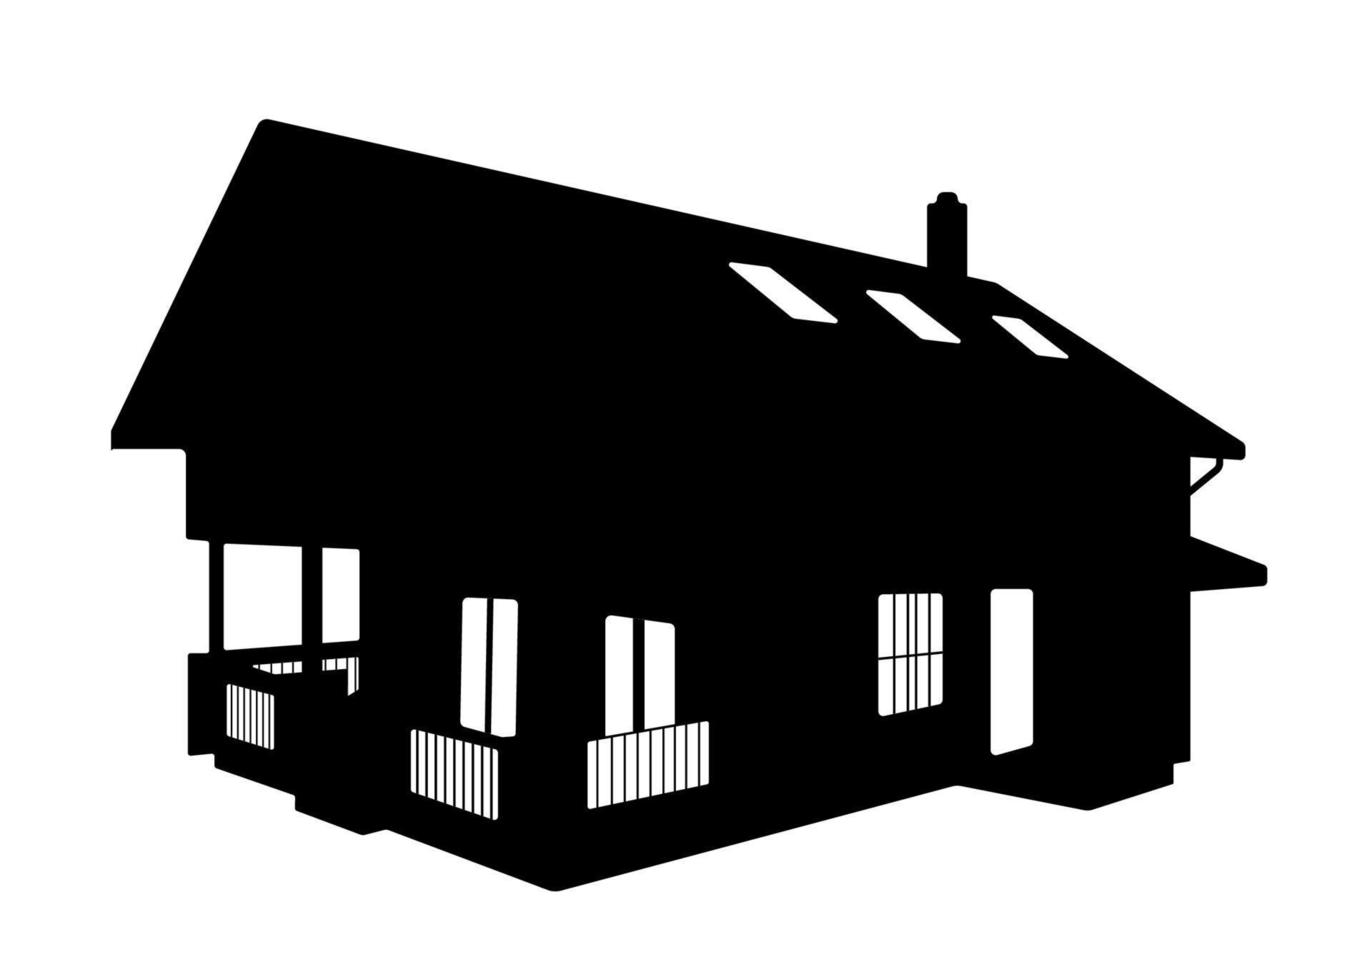 silueta de casa de madera, ilustración de casa de chalet de choza. vector